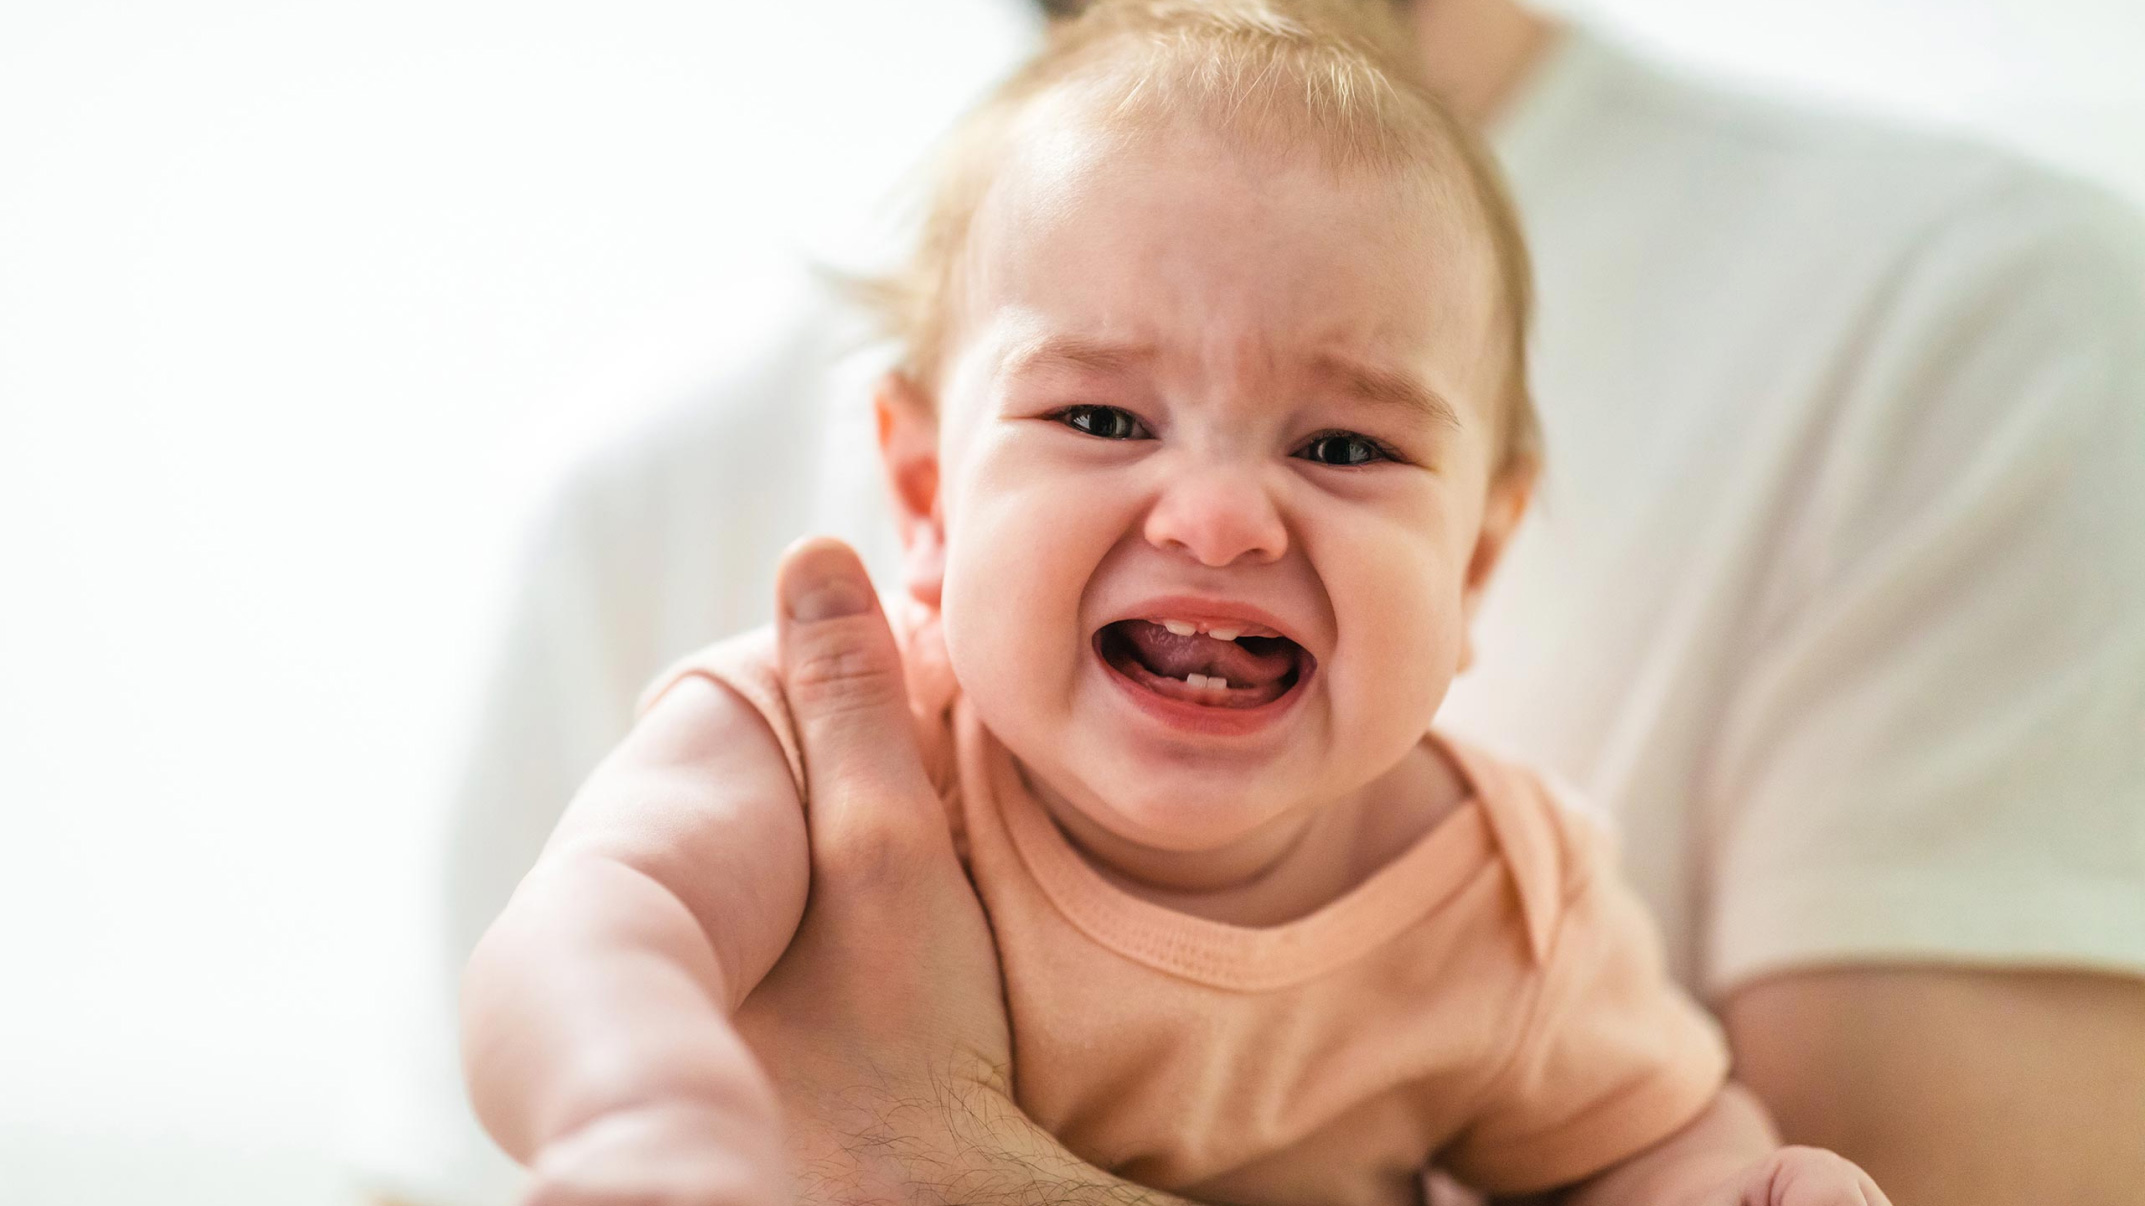 dlaczego niemowle płacze z powodu mokrej pieluchy